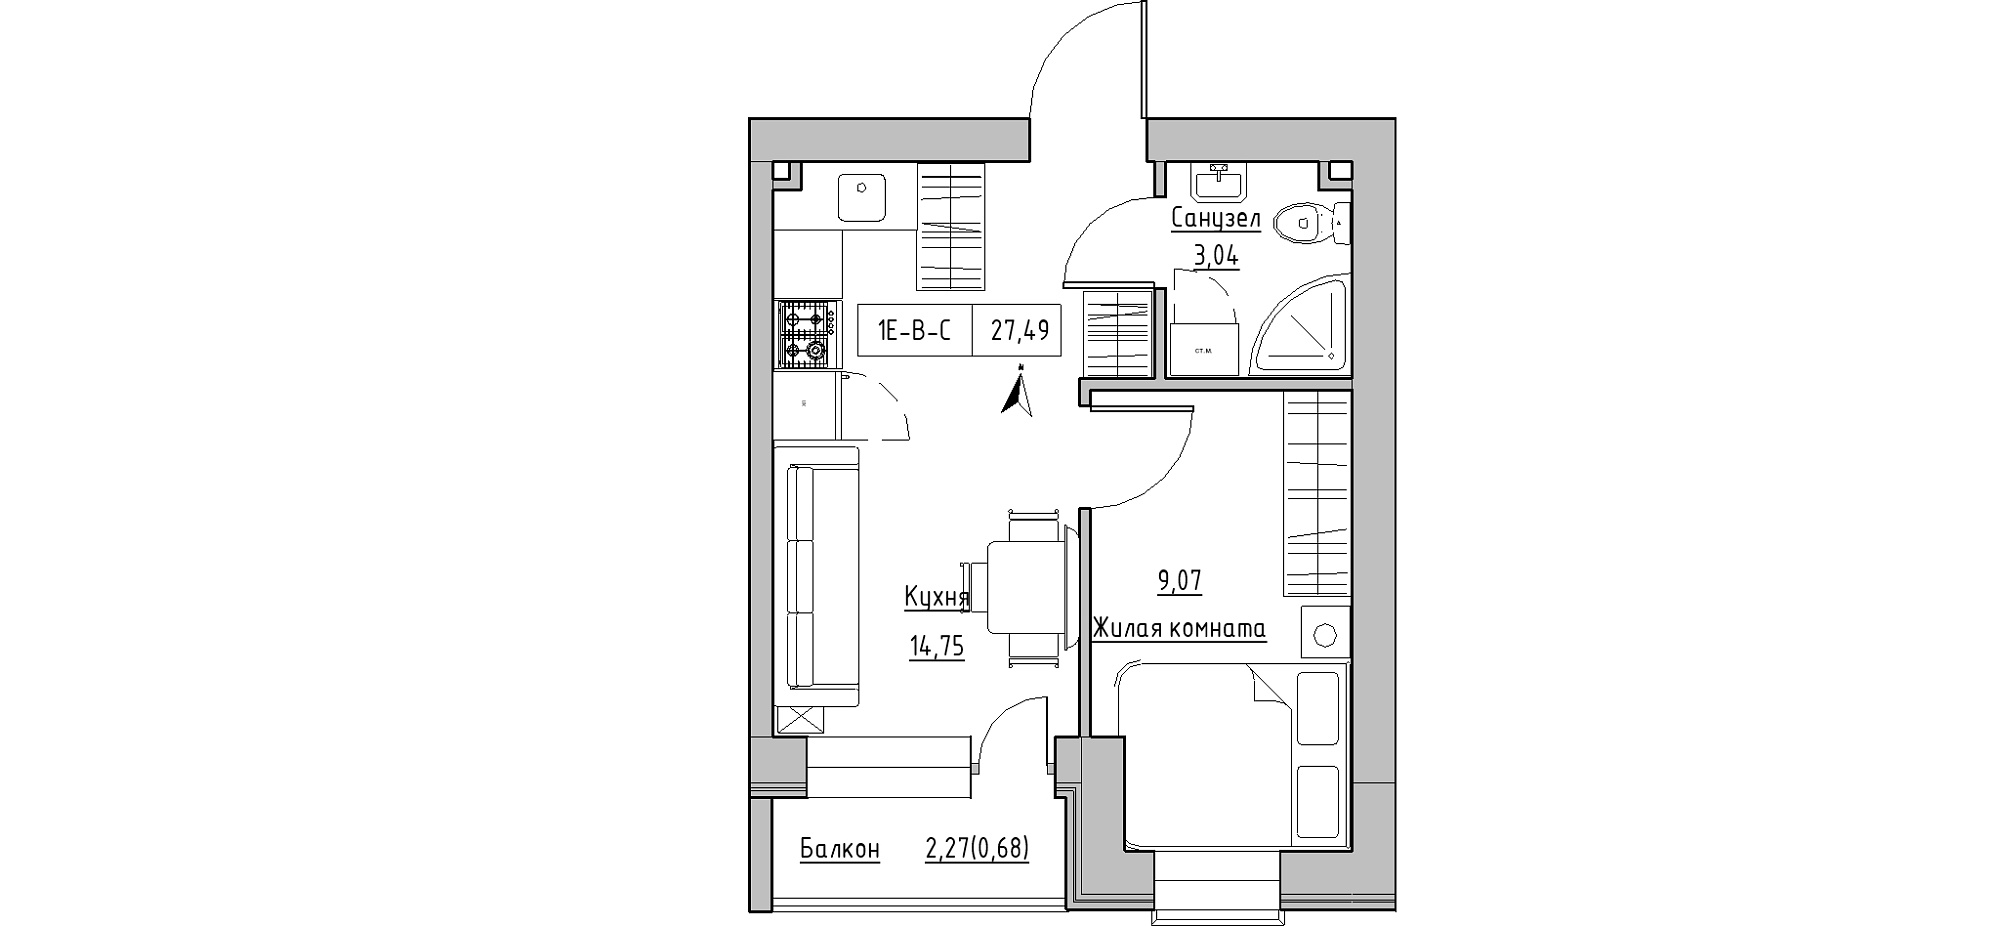 Планування 1-к квартира площею 27.49м2, KS-020-05/0007.